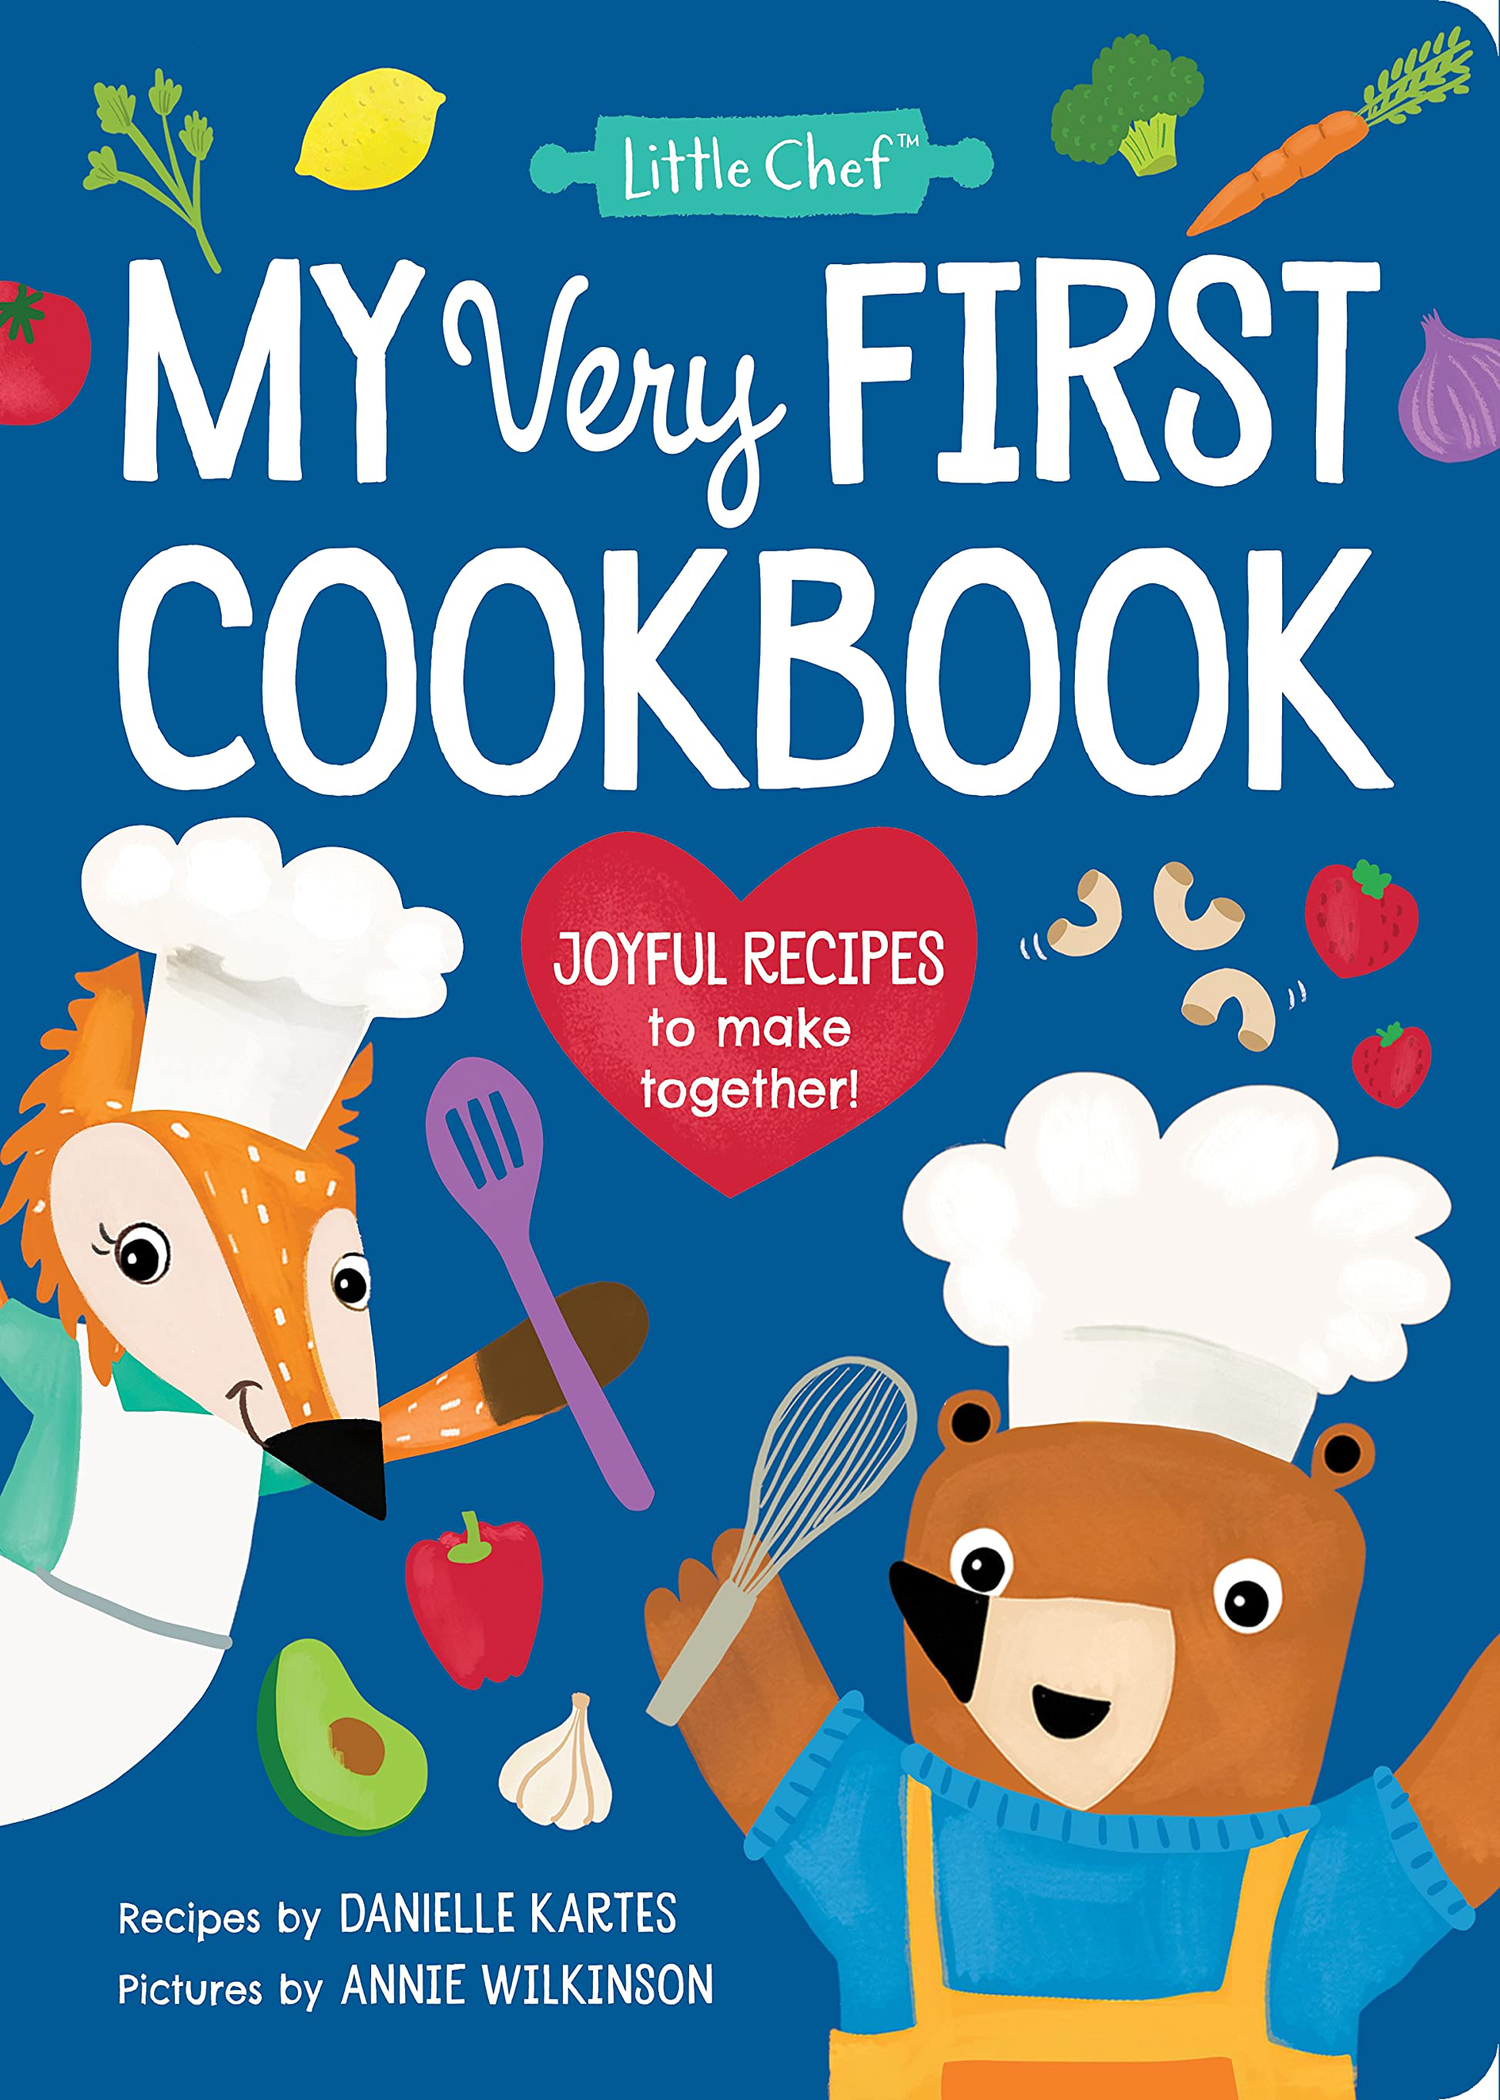 My First Kids Cookbook Kid Chef Junior